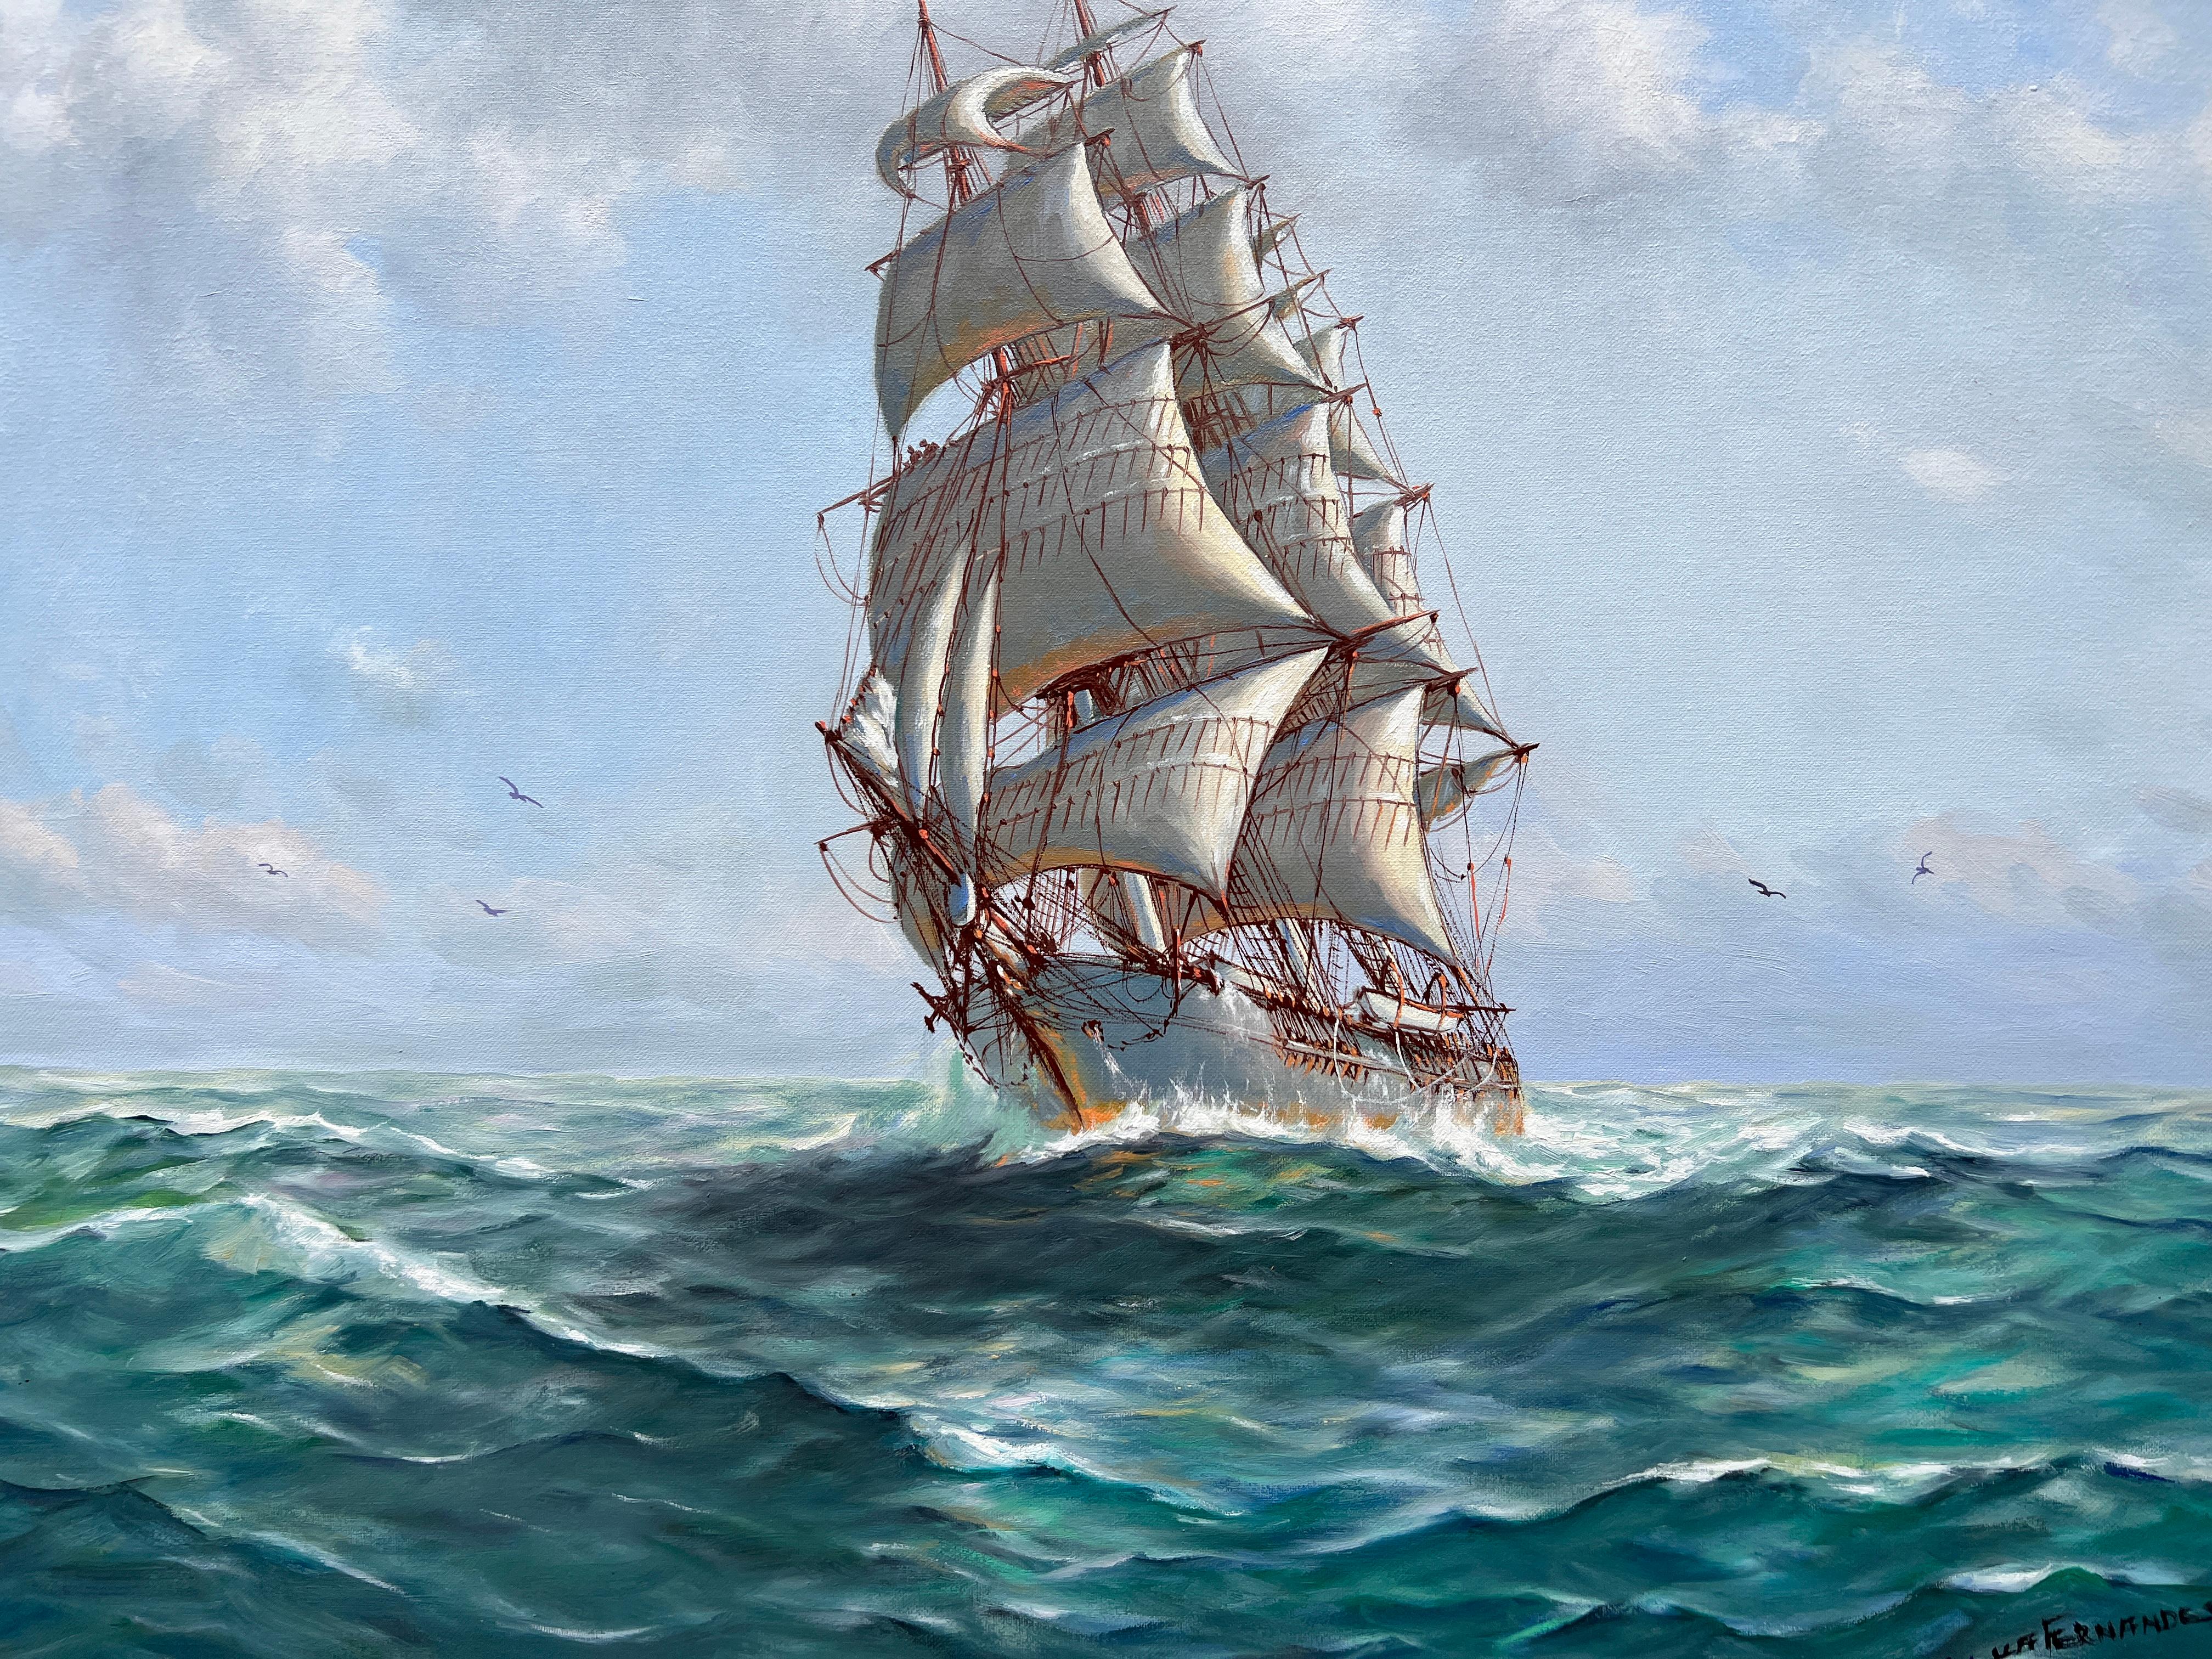 Il s'agit d'une étonnante peinture à l'huile originale sur toile du célèbre peintre luso-américain Humberto da Silva Fernandes (1937-2005) représentant un navire Clipper à pleine voile et un groupe de marins suivant une baleine dans une mer